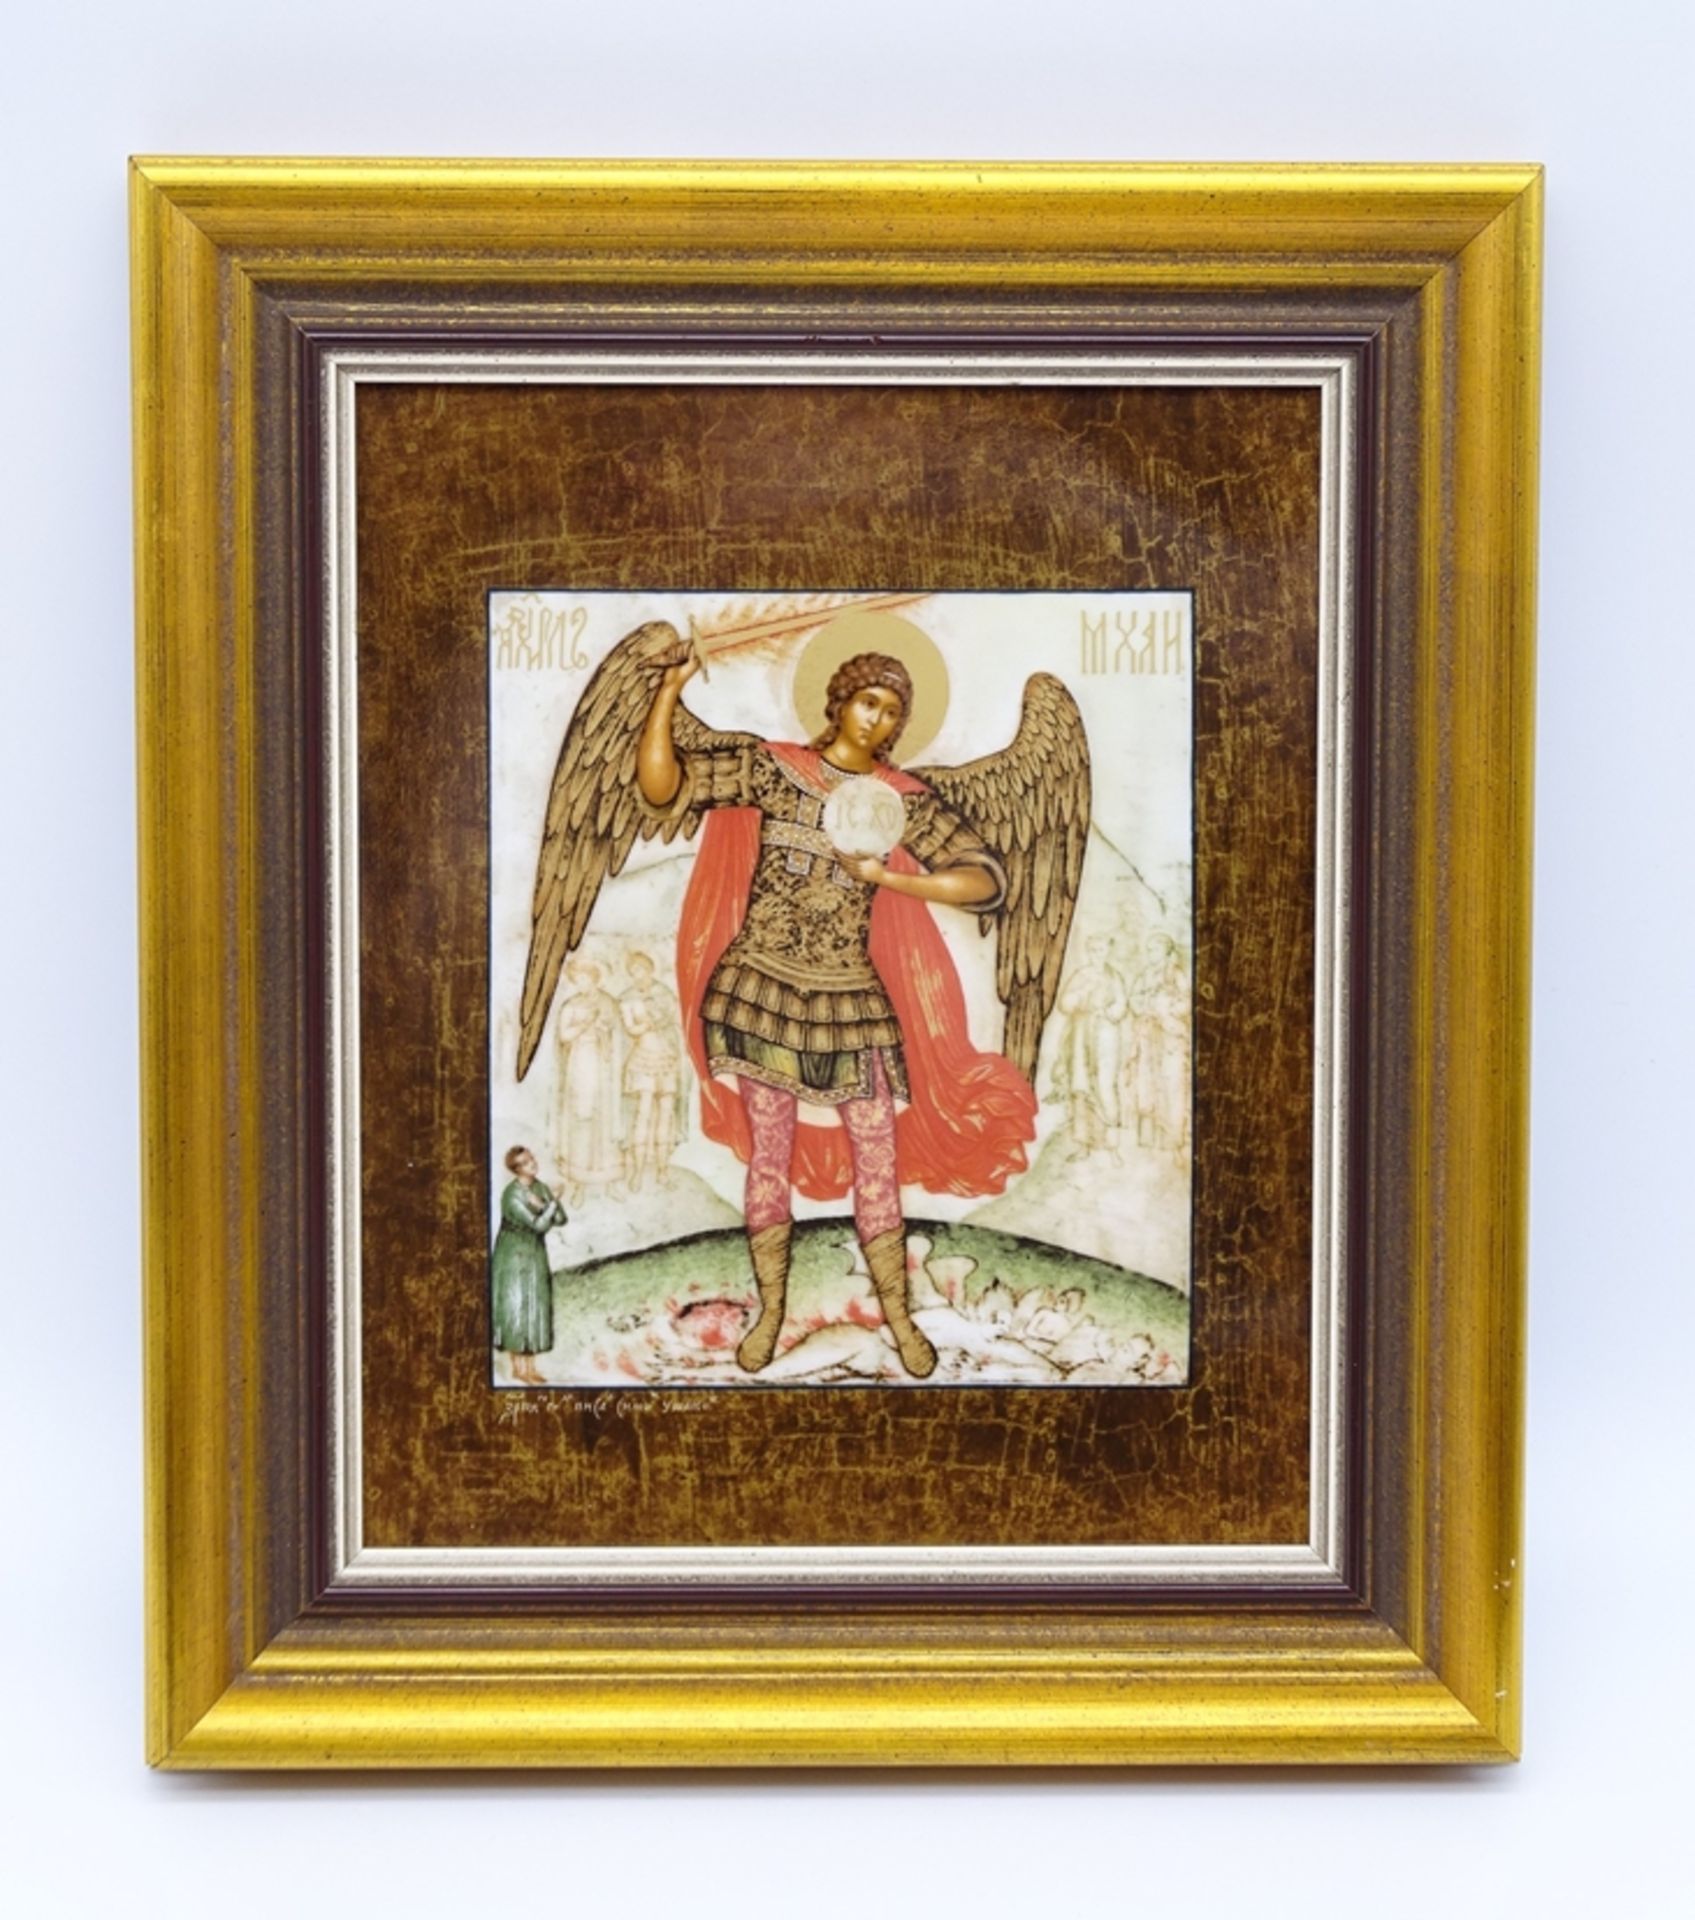 Porzellan Ikone, "Der Erzengel Michael", Gedenk Edition, limitierte Auflage 654/4800, RG 32,5 x 28,